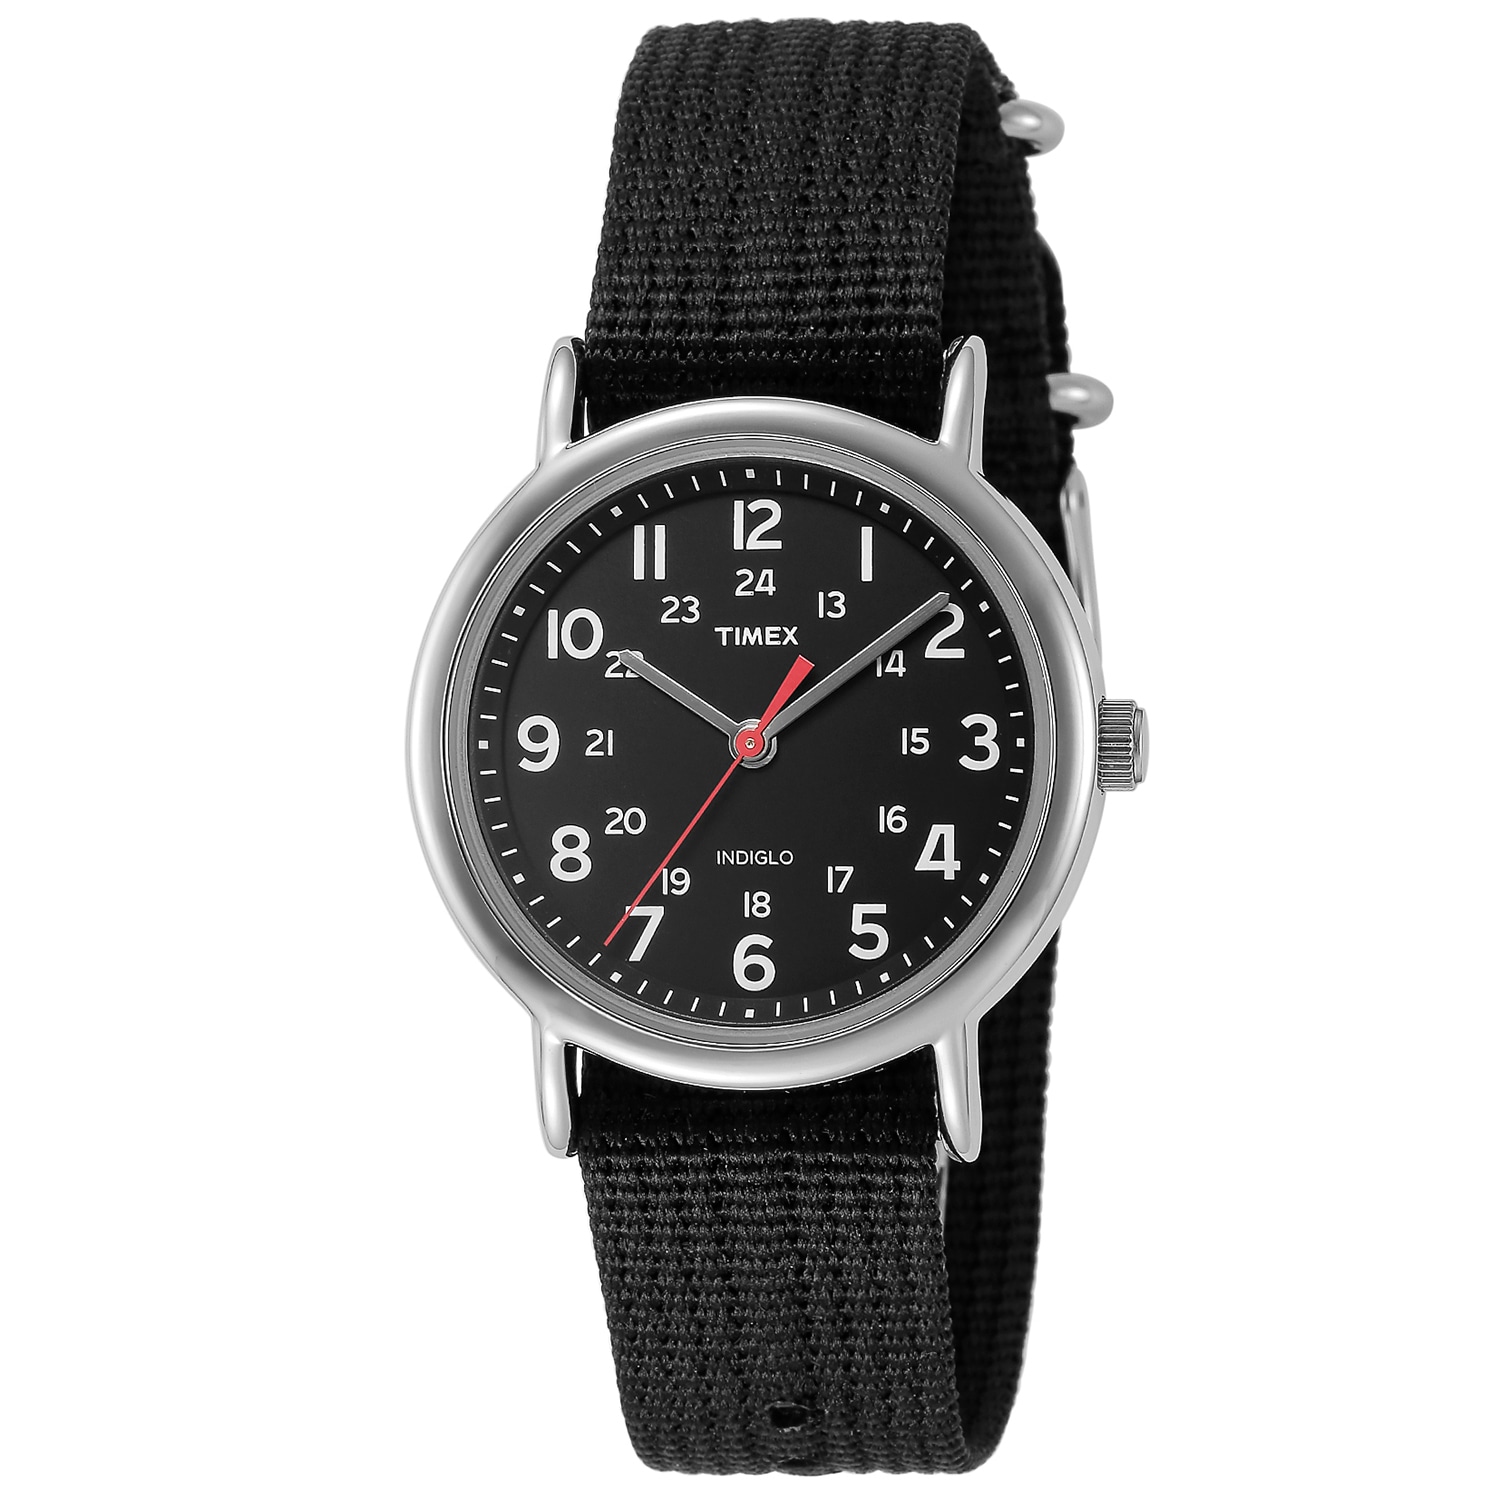 T292 TIMEX 50M INDIGLO WR クォーツ タイメックス メンズ腕時計 